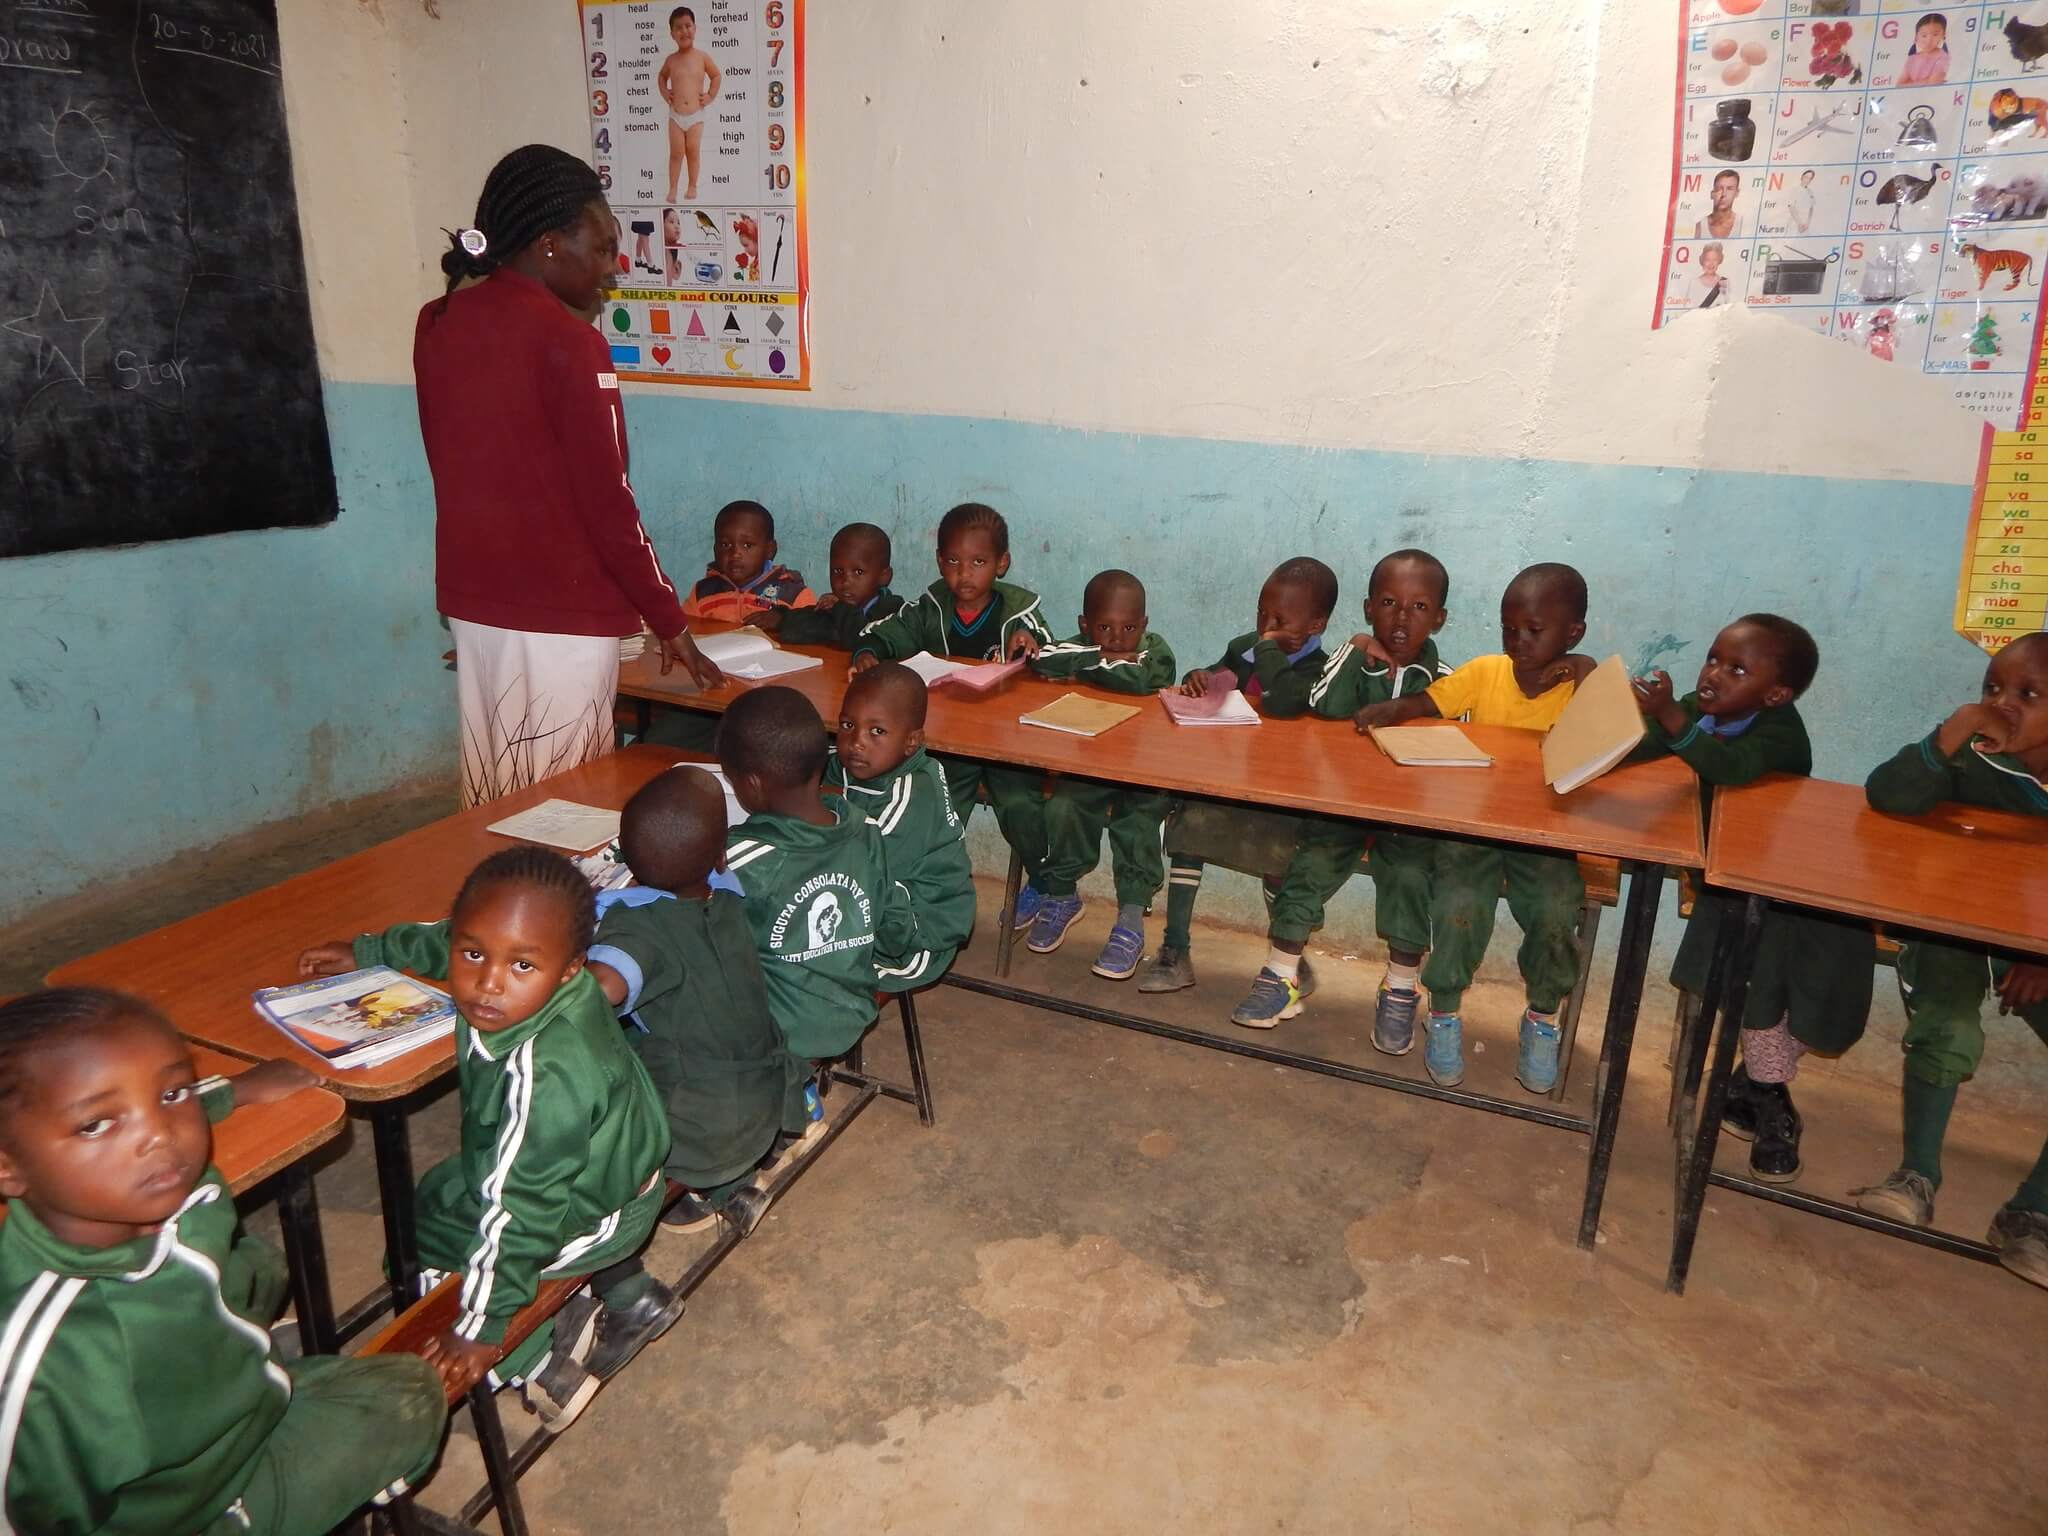 miglioramento condizioni infanzia kenya missione calcutta progetto